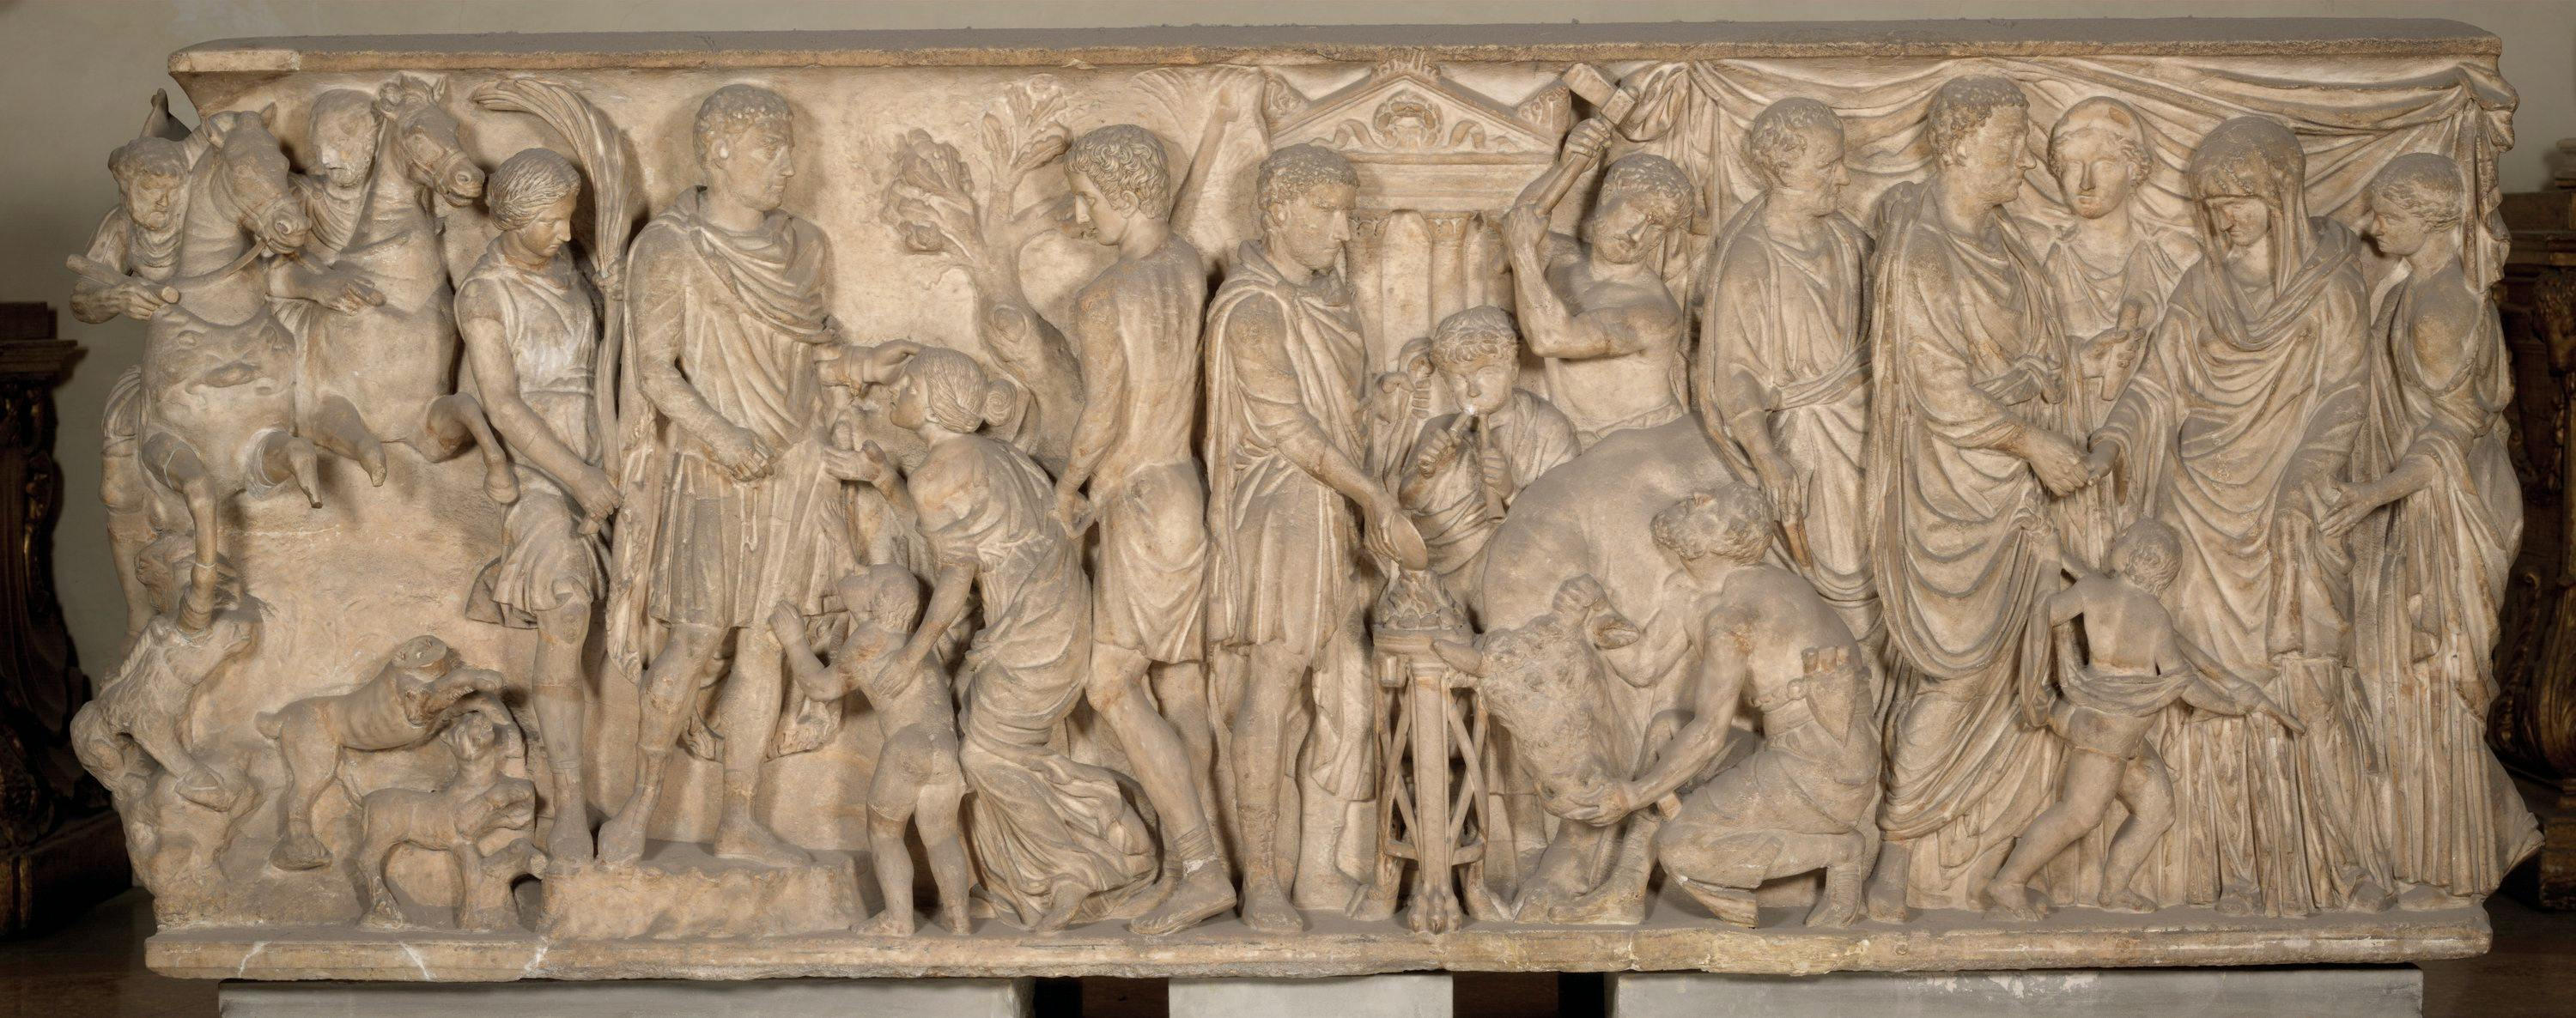 Sarcophagus with scenes of vita humana et militaris